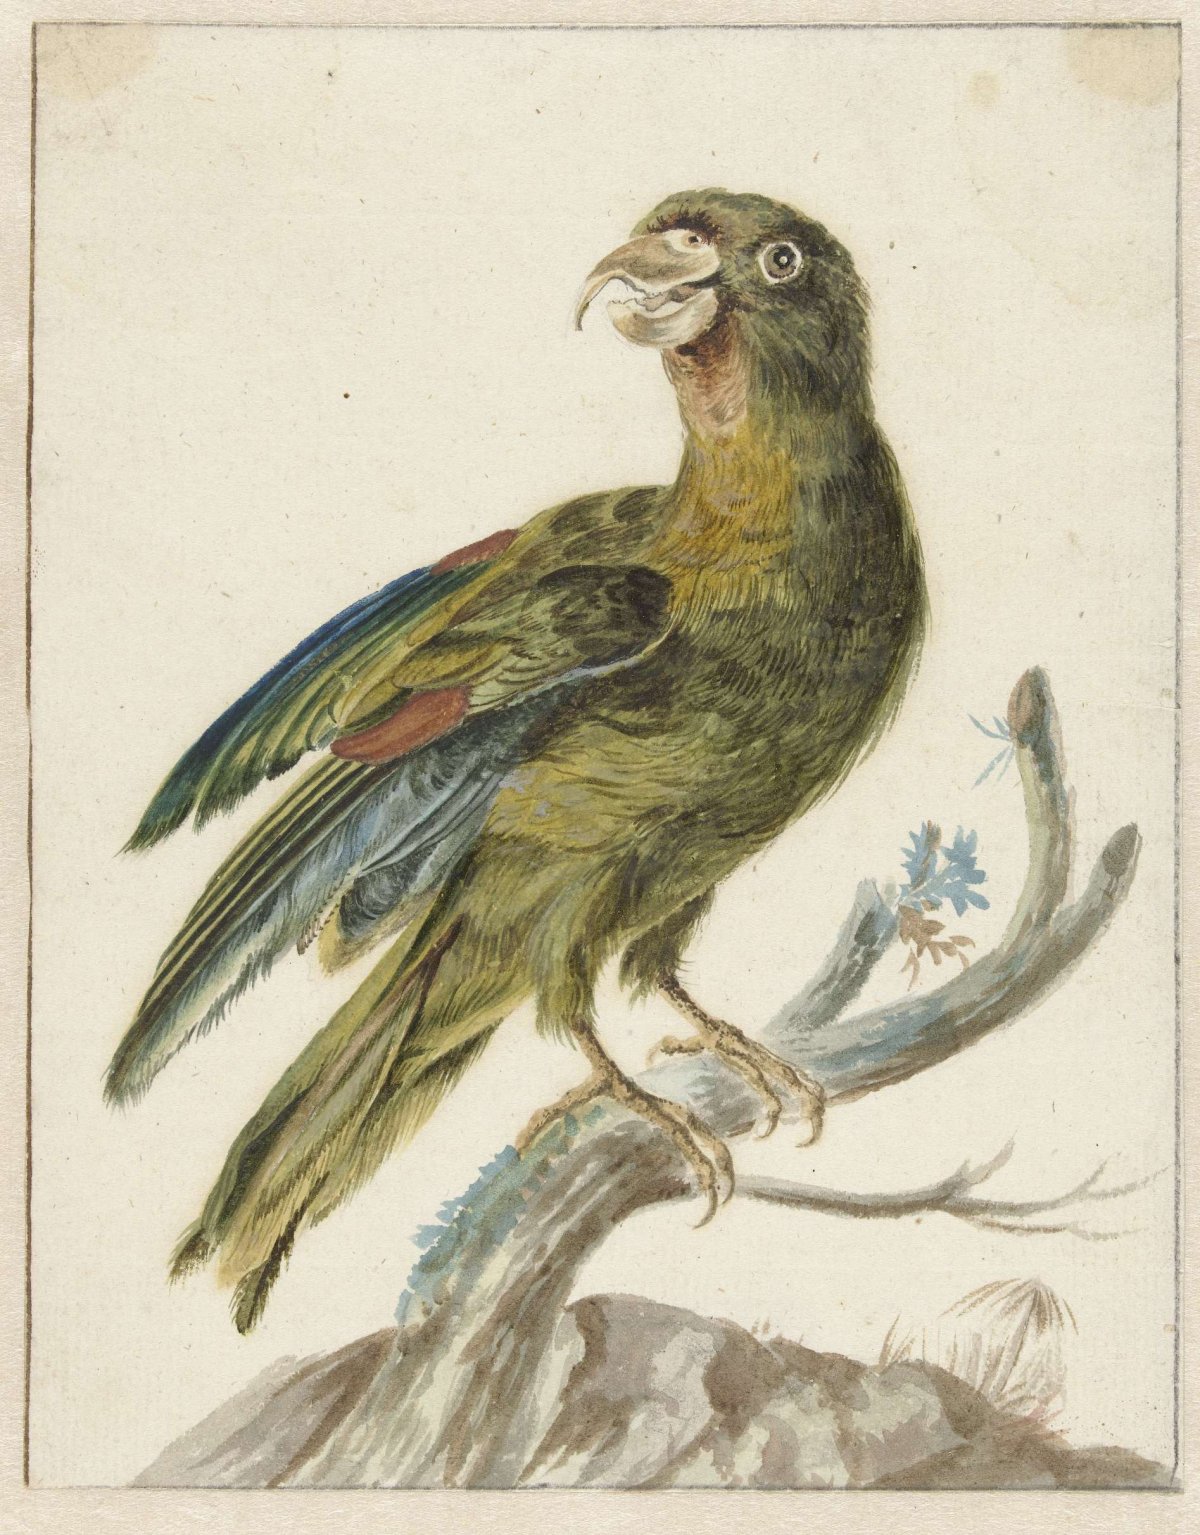 Parakeet, Jan Weenix, 1670 - 1719